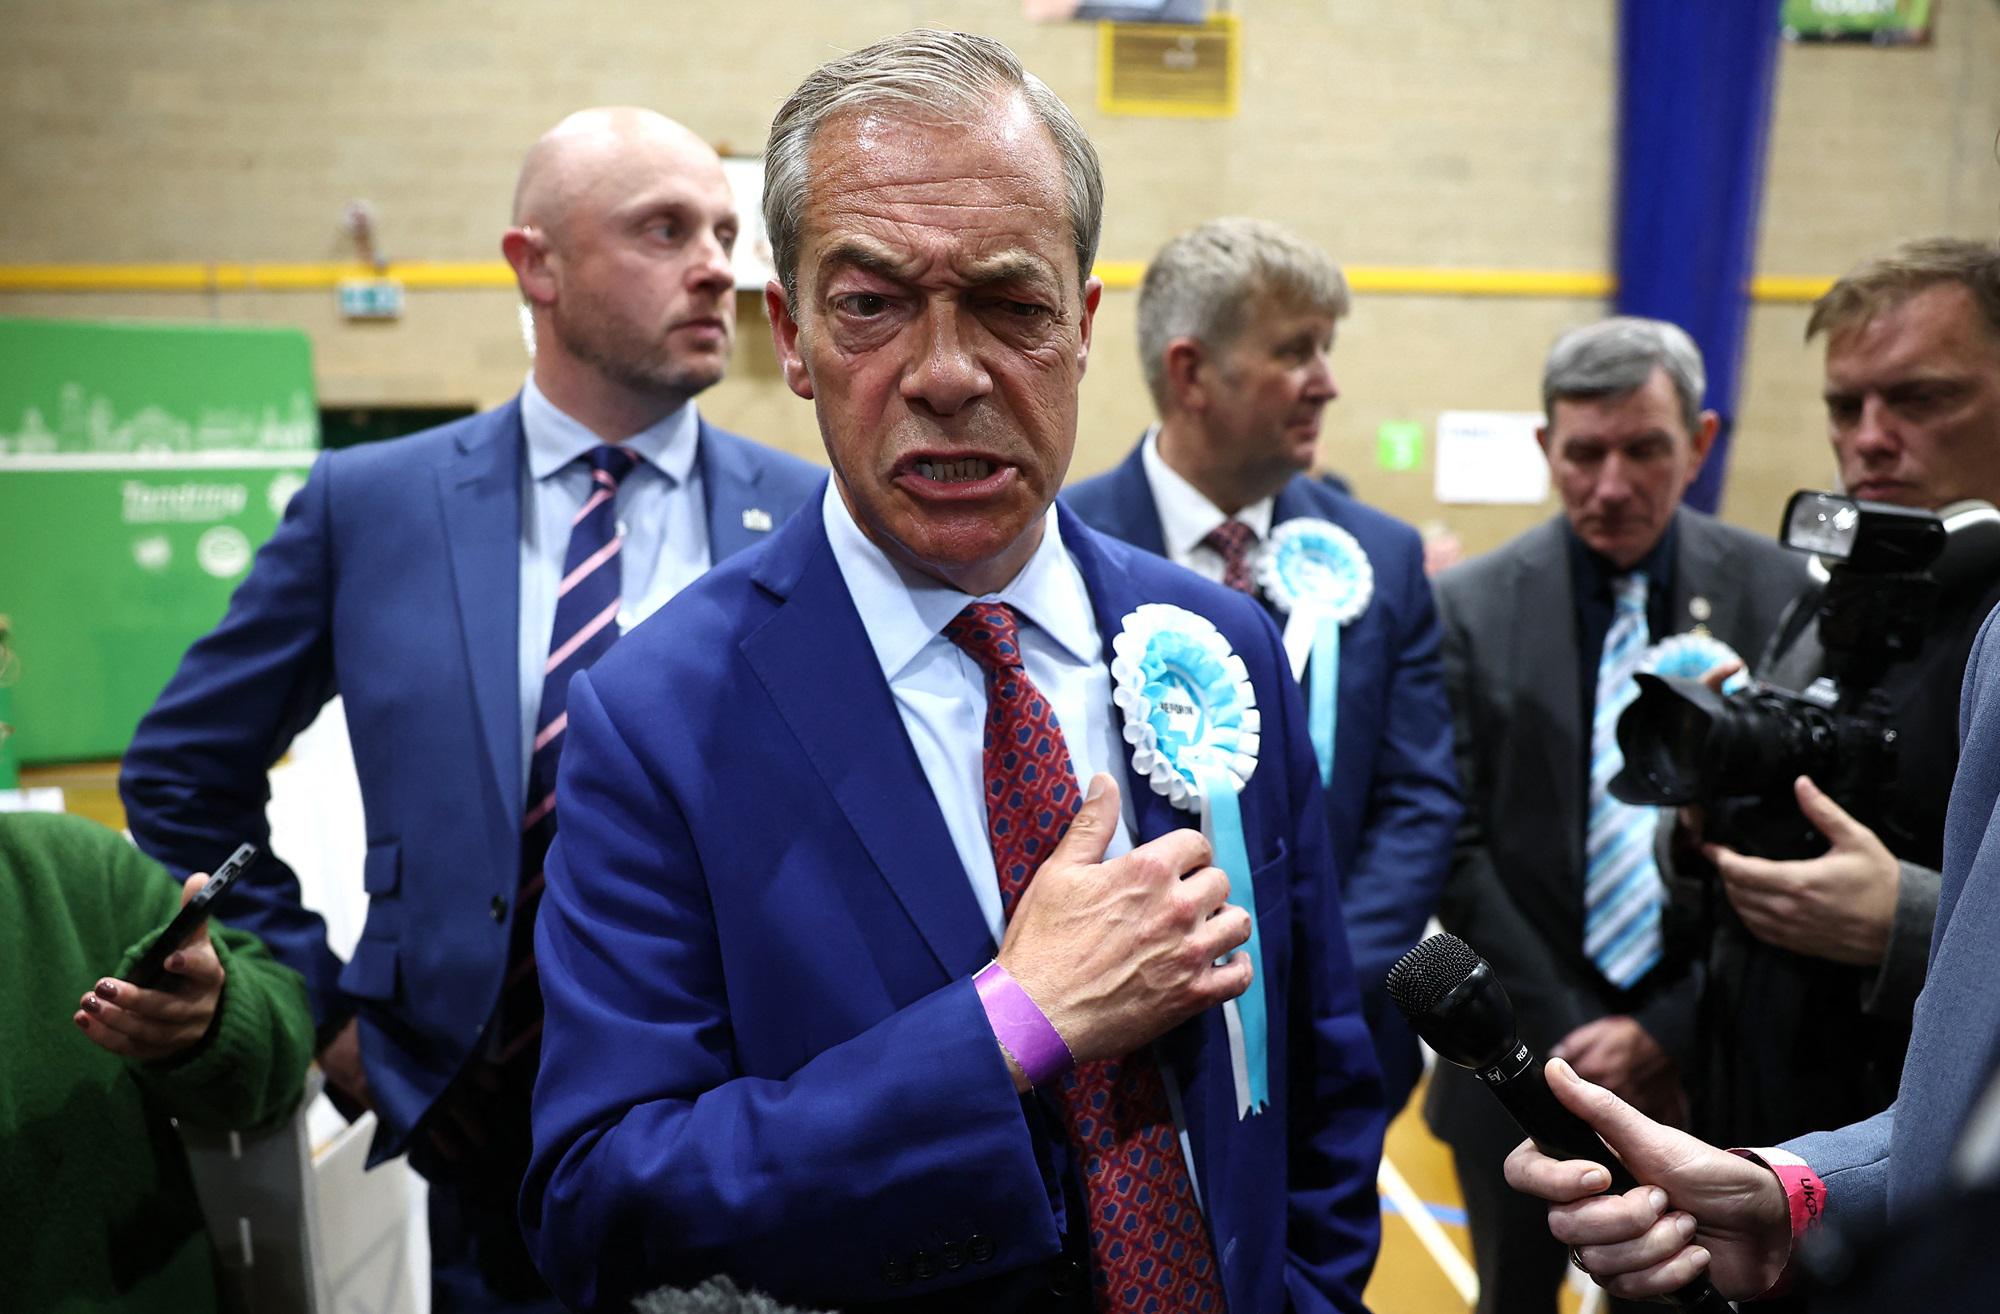 Elezioni Gb - Farage eletto per la prima volta: Primo passo di qualcosa che vi stupirà